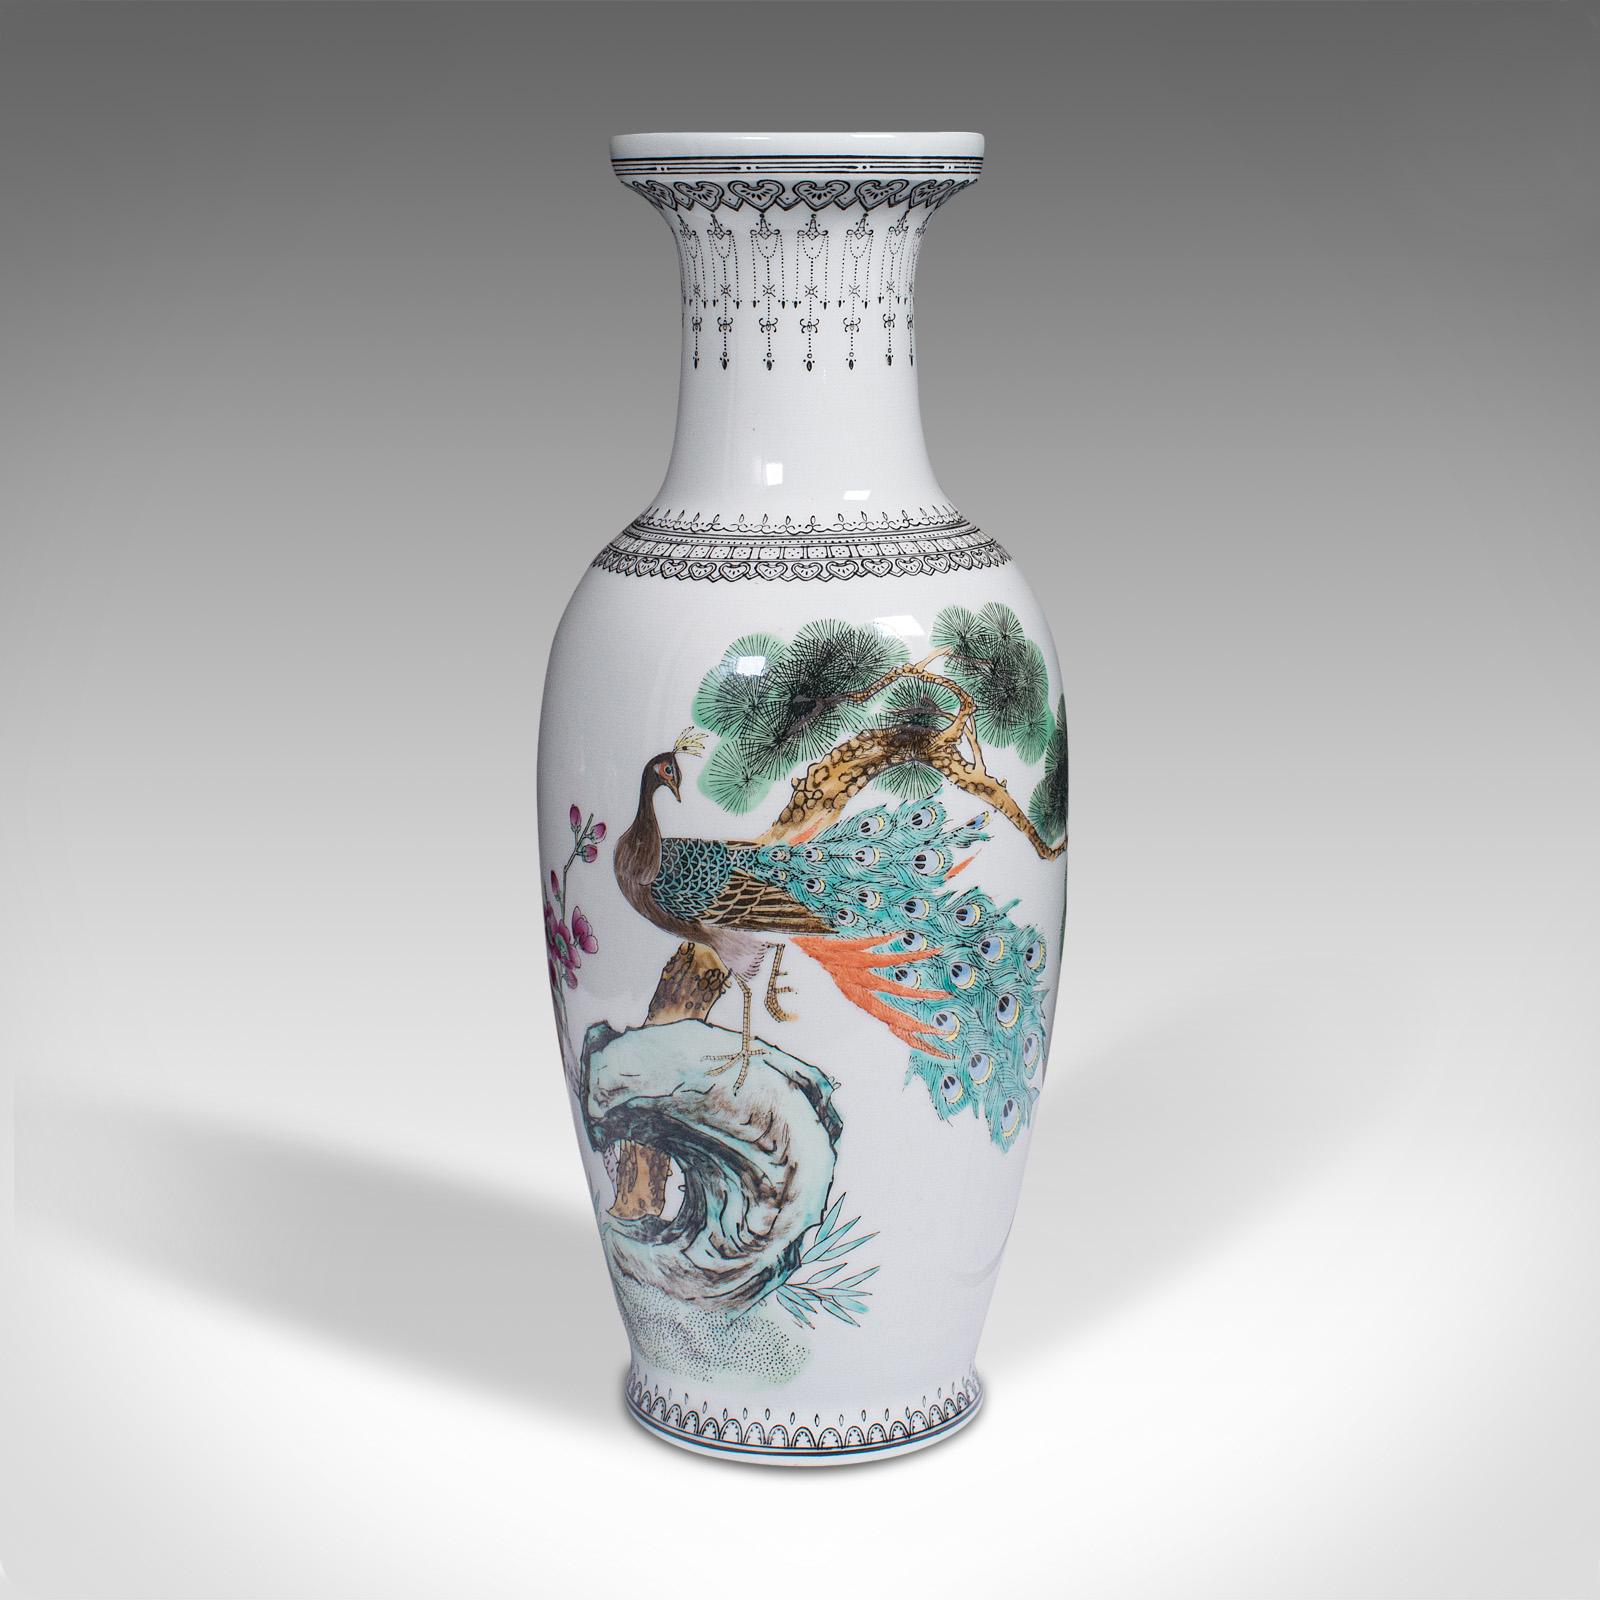 Dies ist eine alte Blumenvase. Chinesische Zierurne aus Keramik mit Pfauendekor aus der Mitte des 20. Jahrhunderts, um 1960. 

Fröhlich detaillierte Vase mit offenkundig orientalischem Geschmack
Mit einer wünschenswerten gealterten Patina